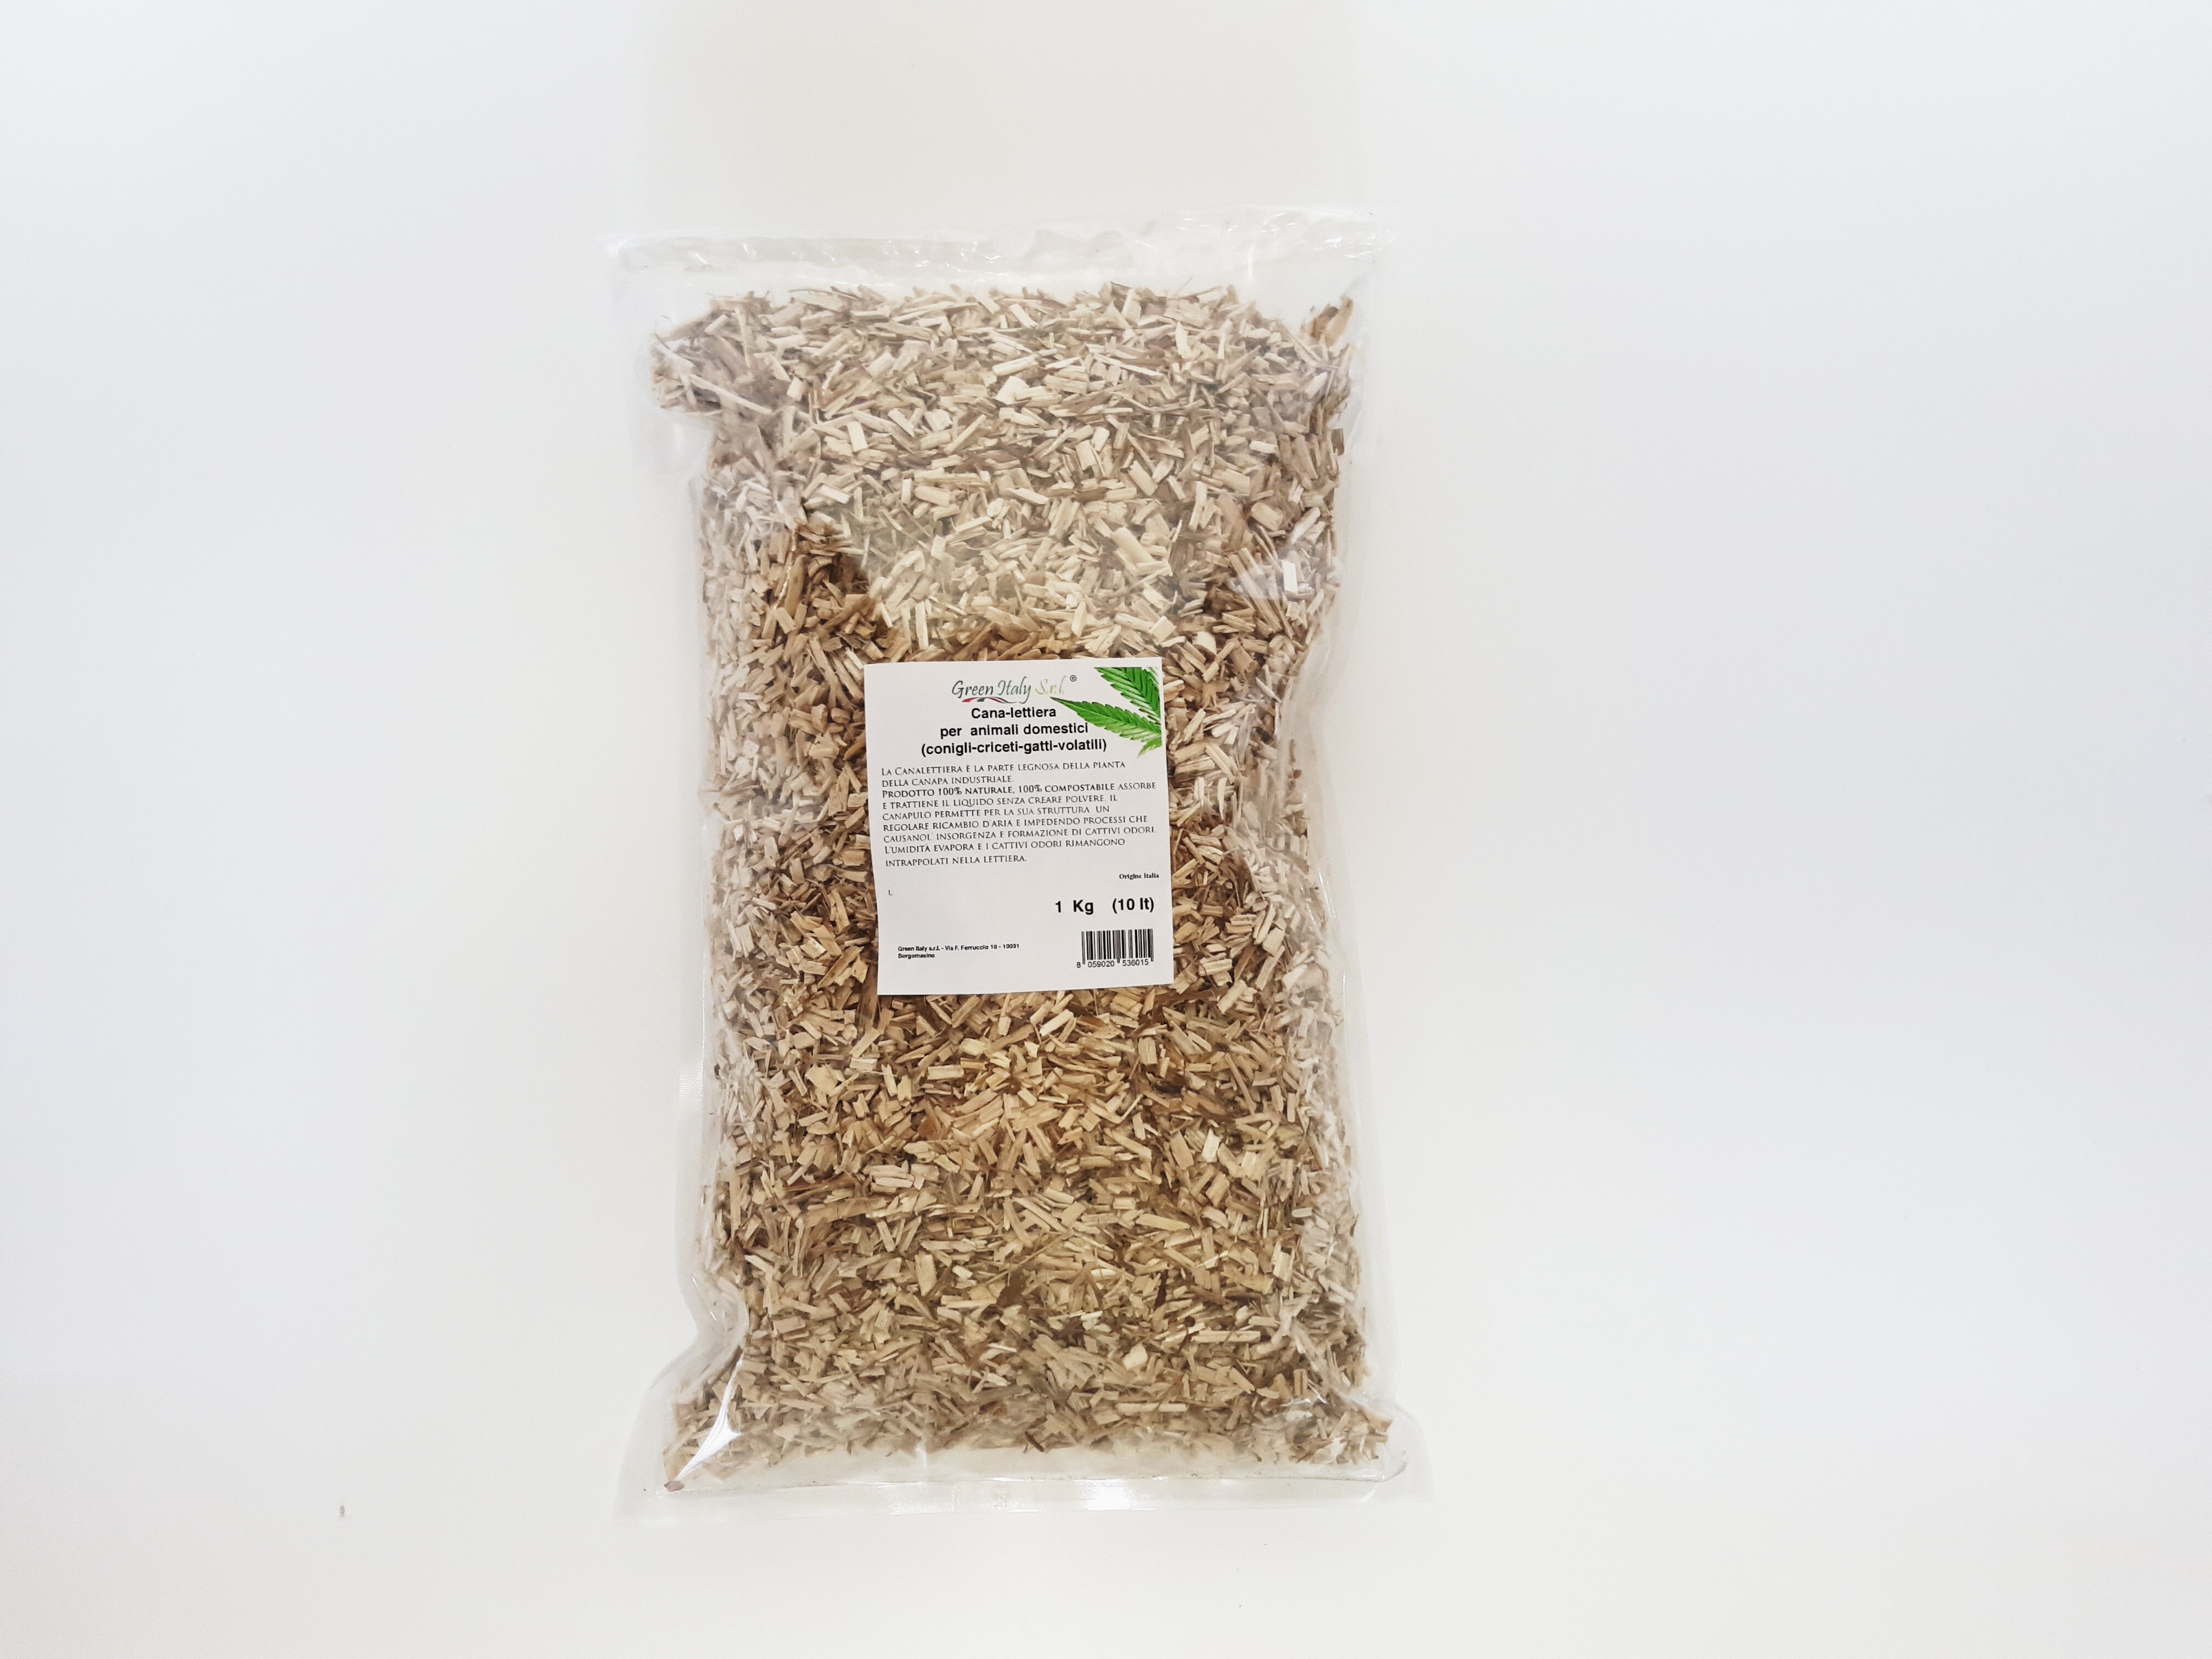 Cana-Lettiera 100% compostabile 1kg - 10L